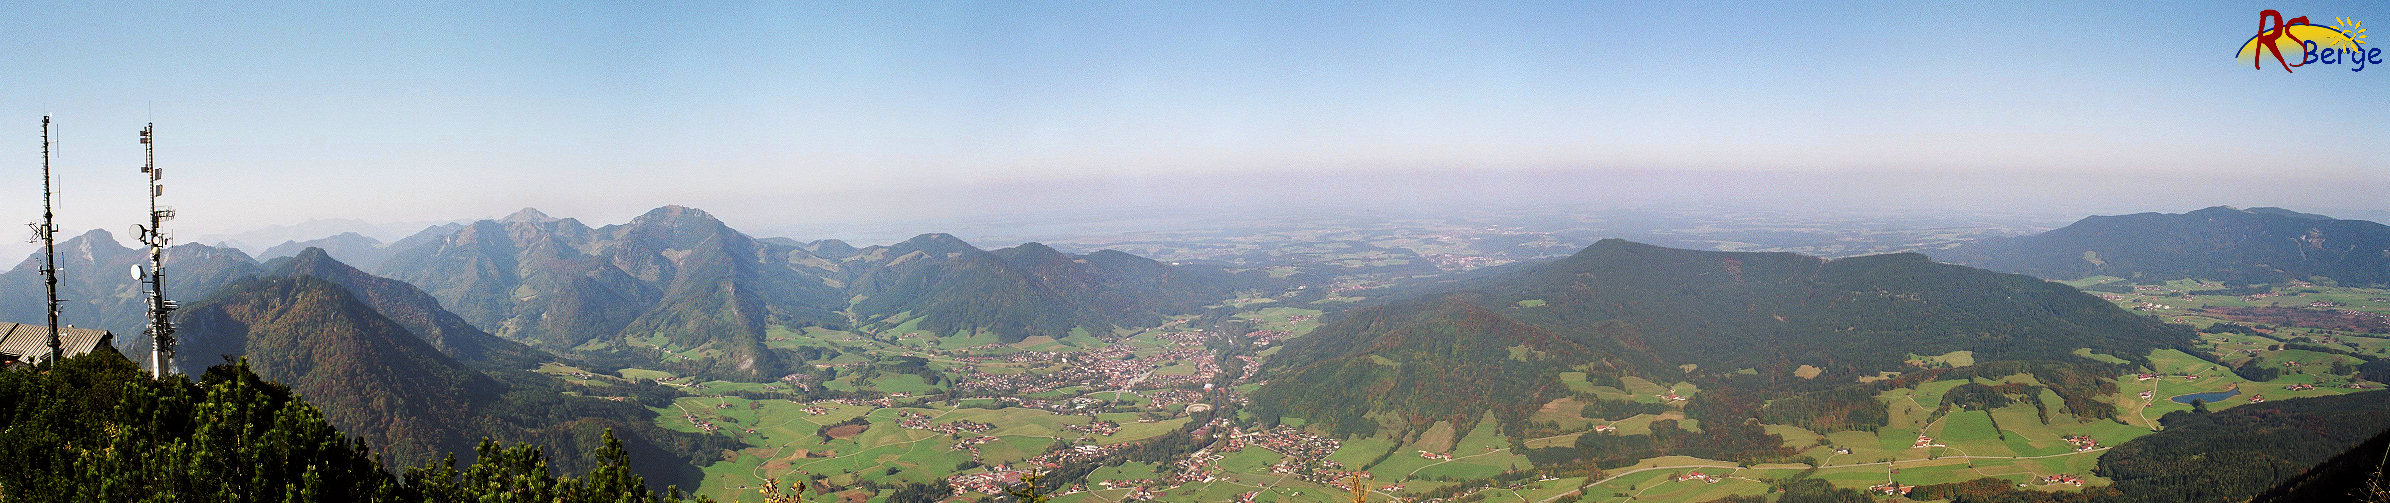 Wanderung 118 Rauschberge: Panoramaaufnahme von Westen nach Nordosten